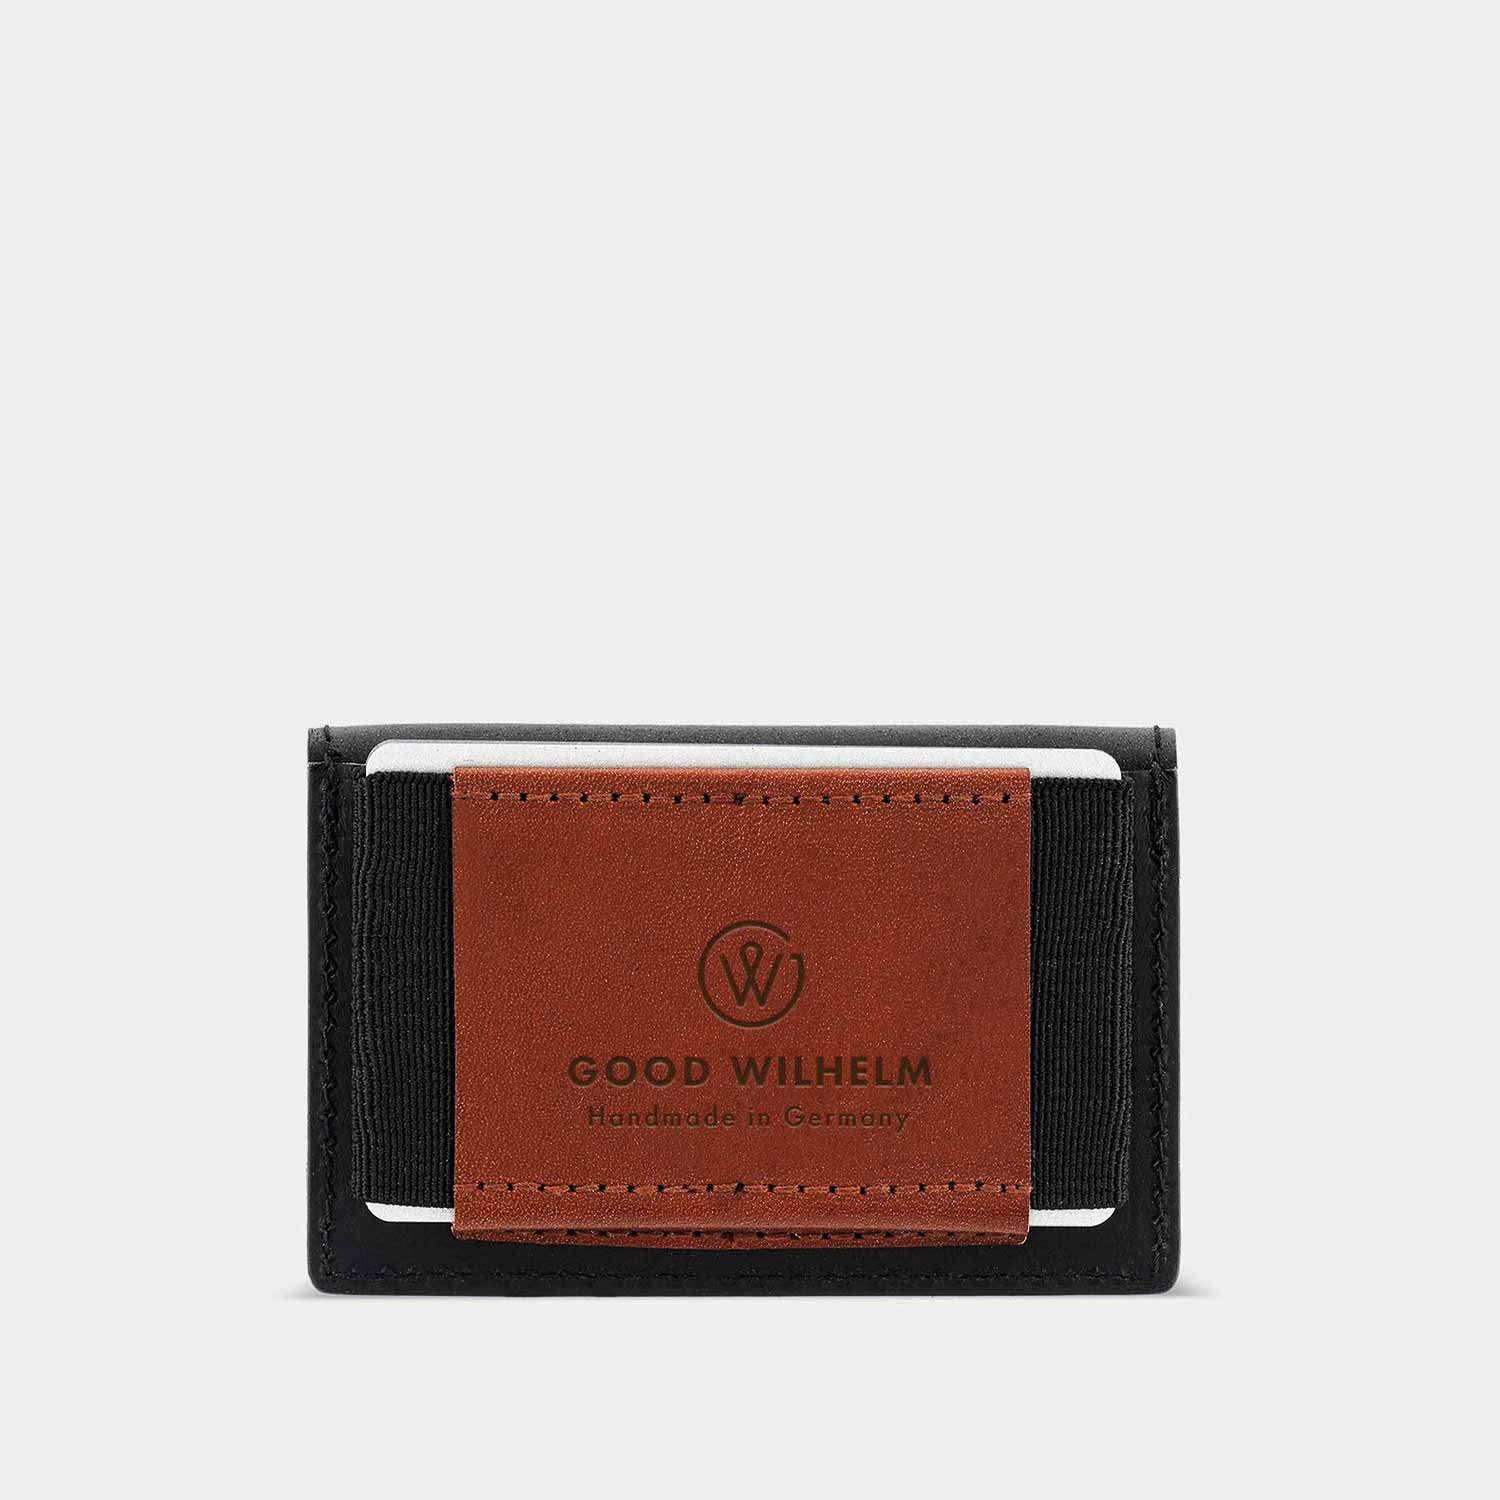 Kartenfach des mini Portemonnaies OTTO von Goodwilhelm in der Farbe black